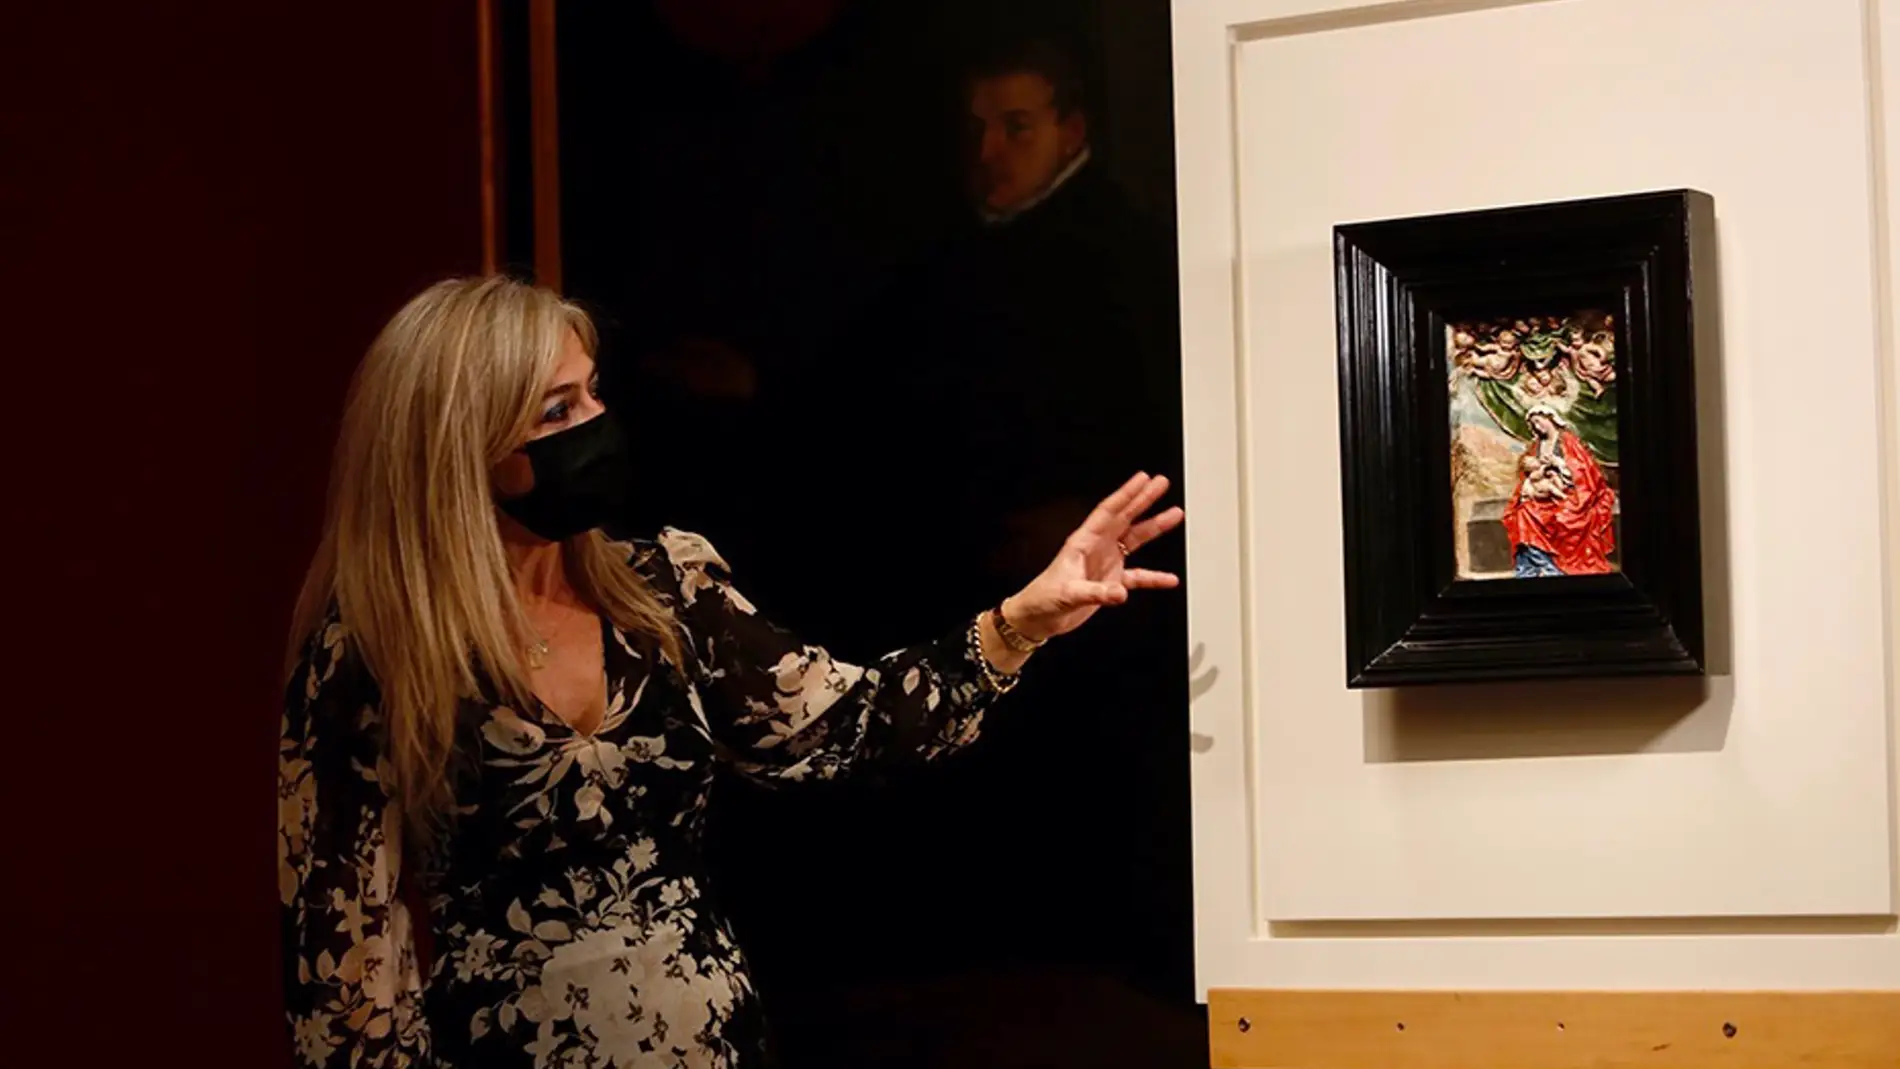 Cultura adquiere un relieve de La Roldana para el Museo de Bellas Artes por 150.000 euros